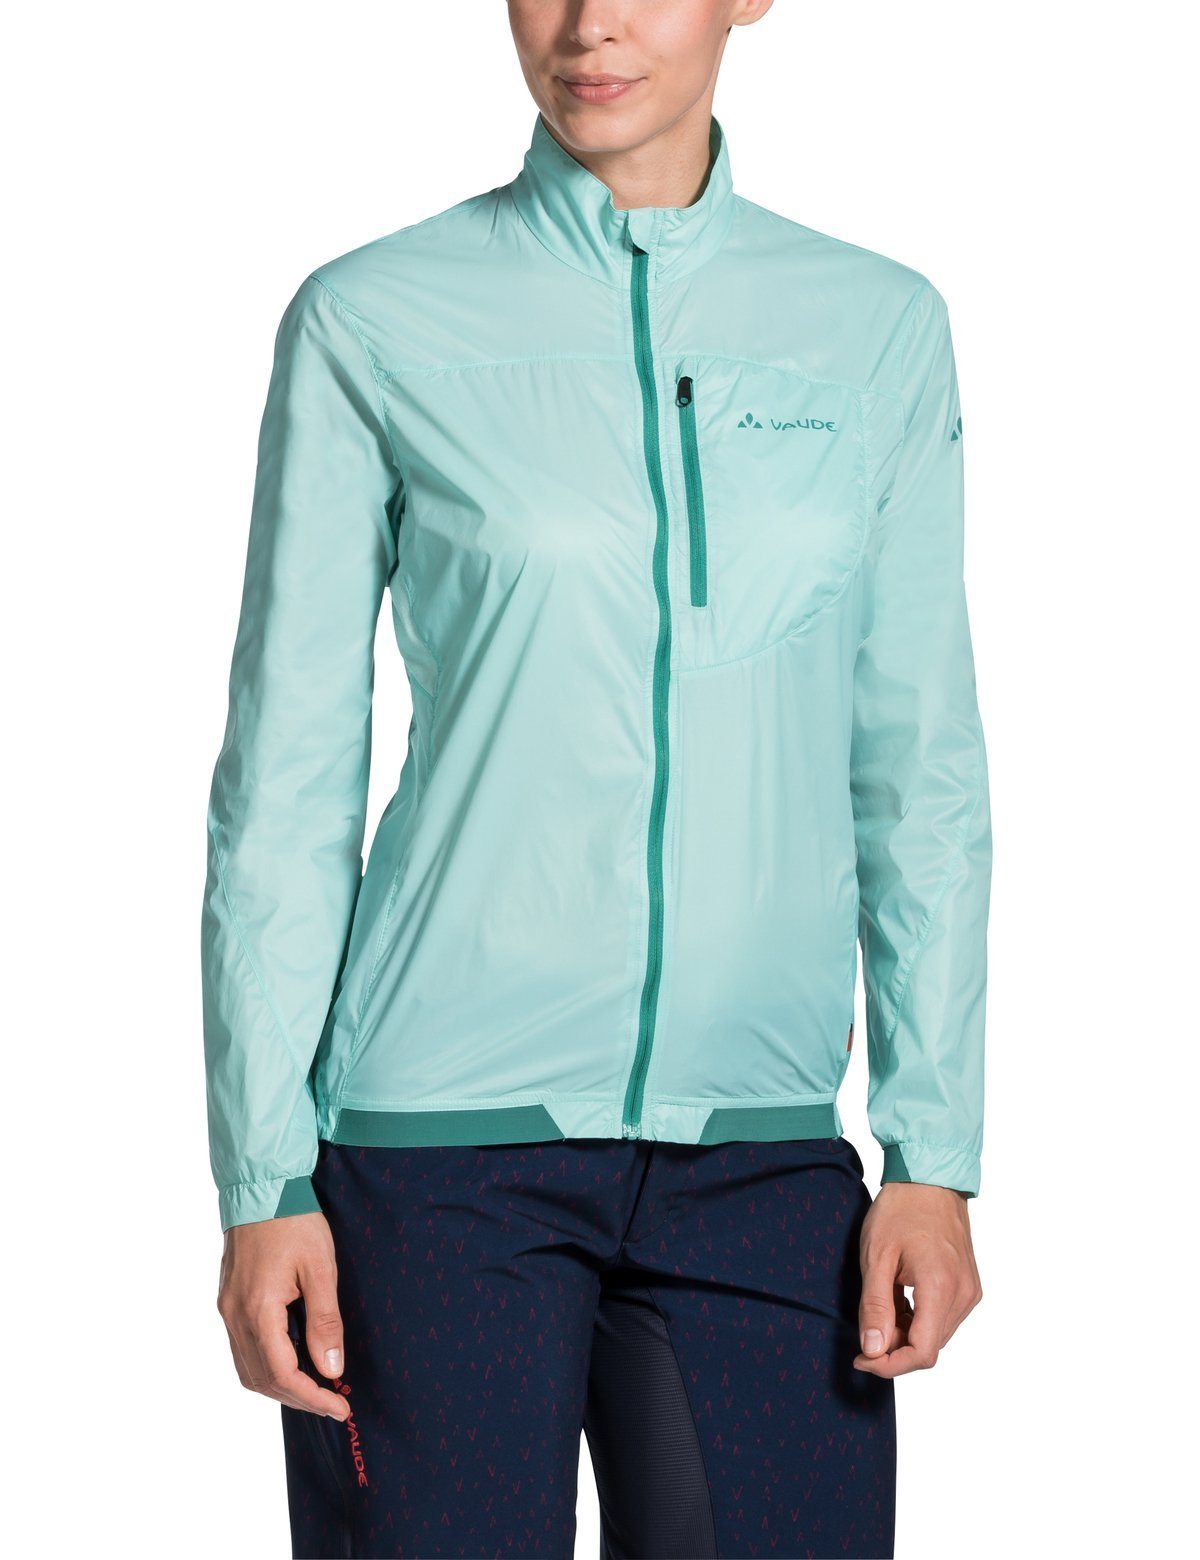 Vaude Women's Moab UL Jacket II - Ultralight wind proof jacket for outdoor sports, Glacier / 44